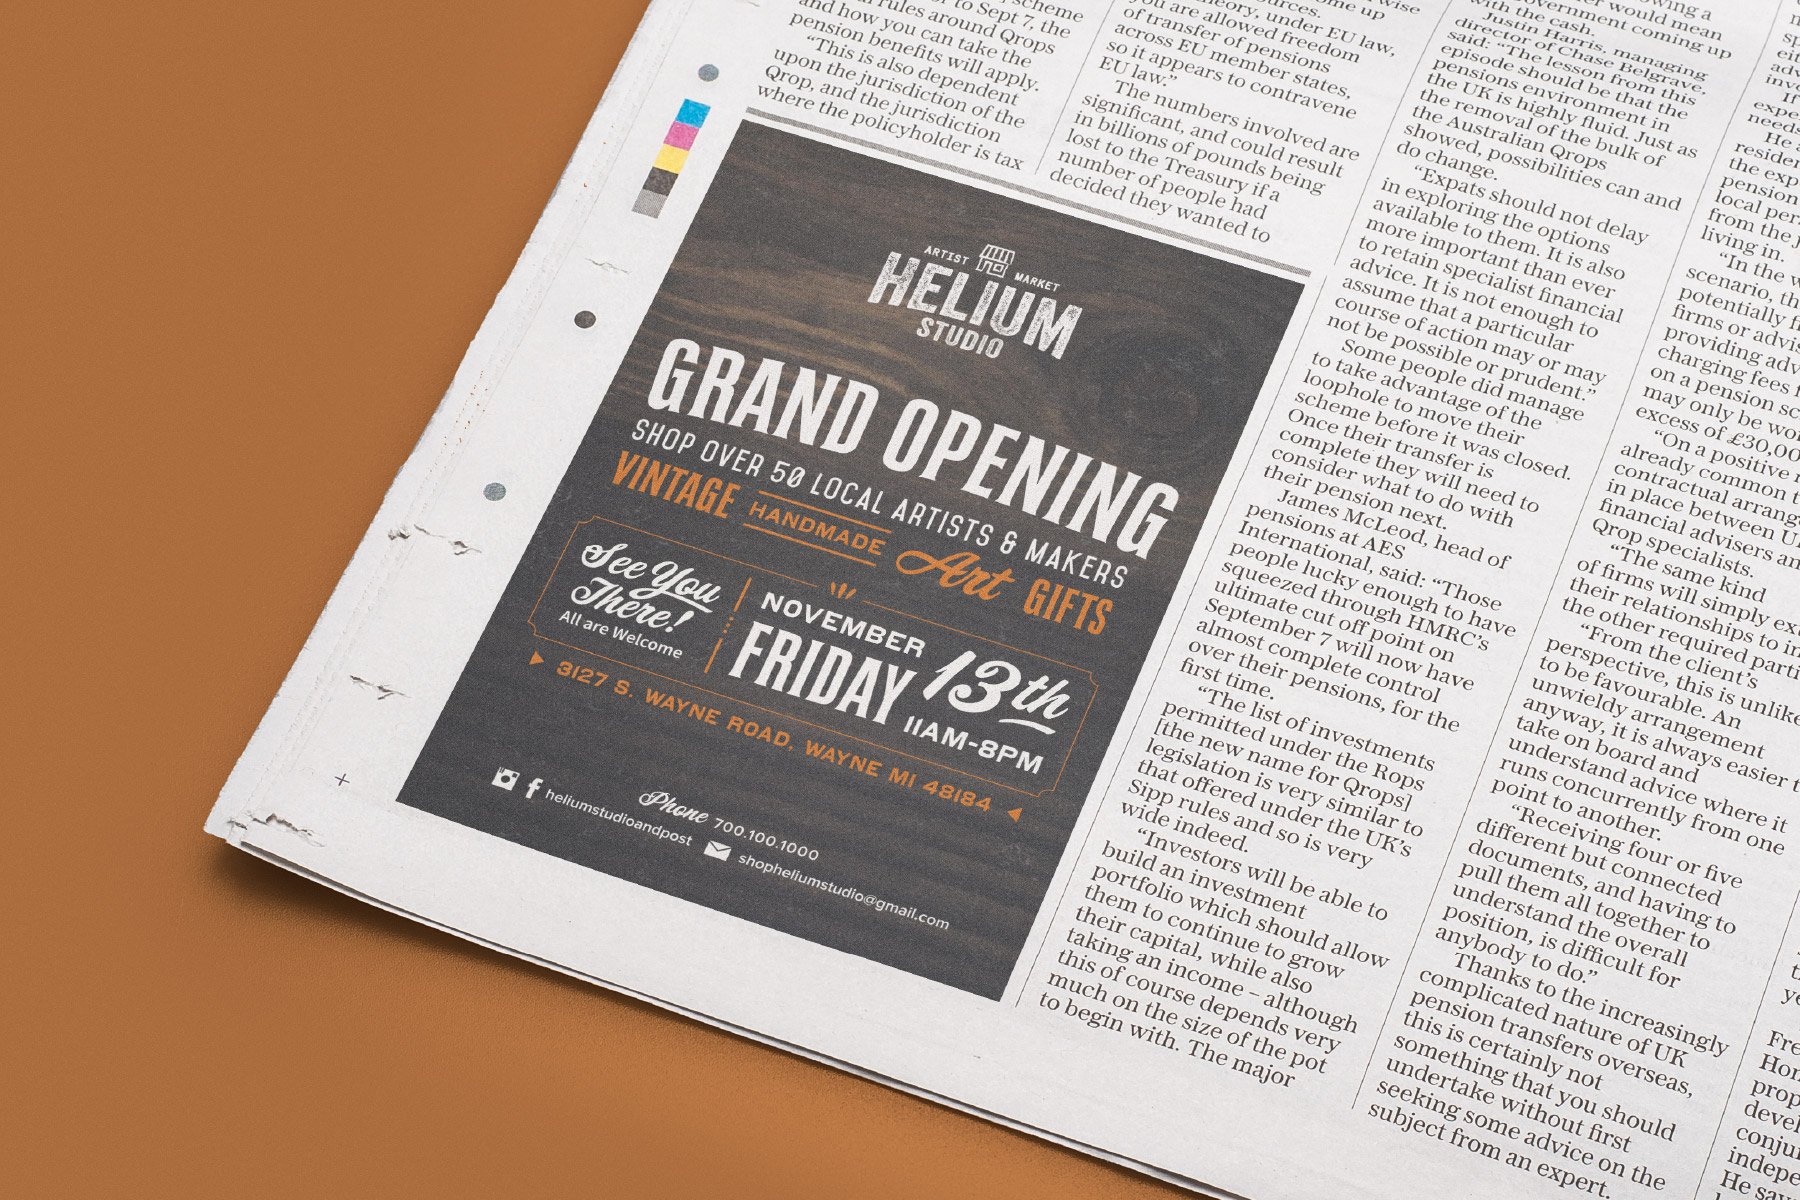 Grand opening newspaper advertisement for Helium Studio